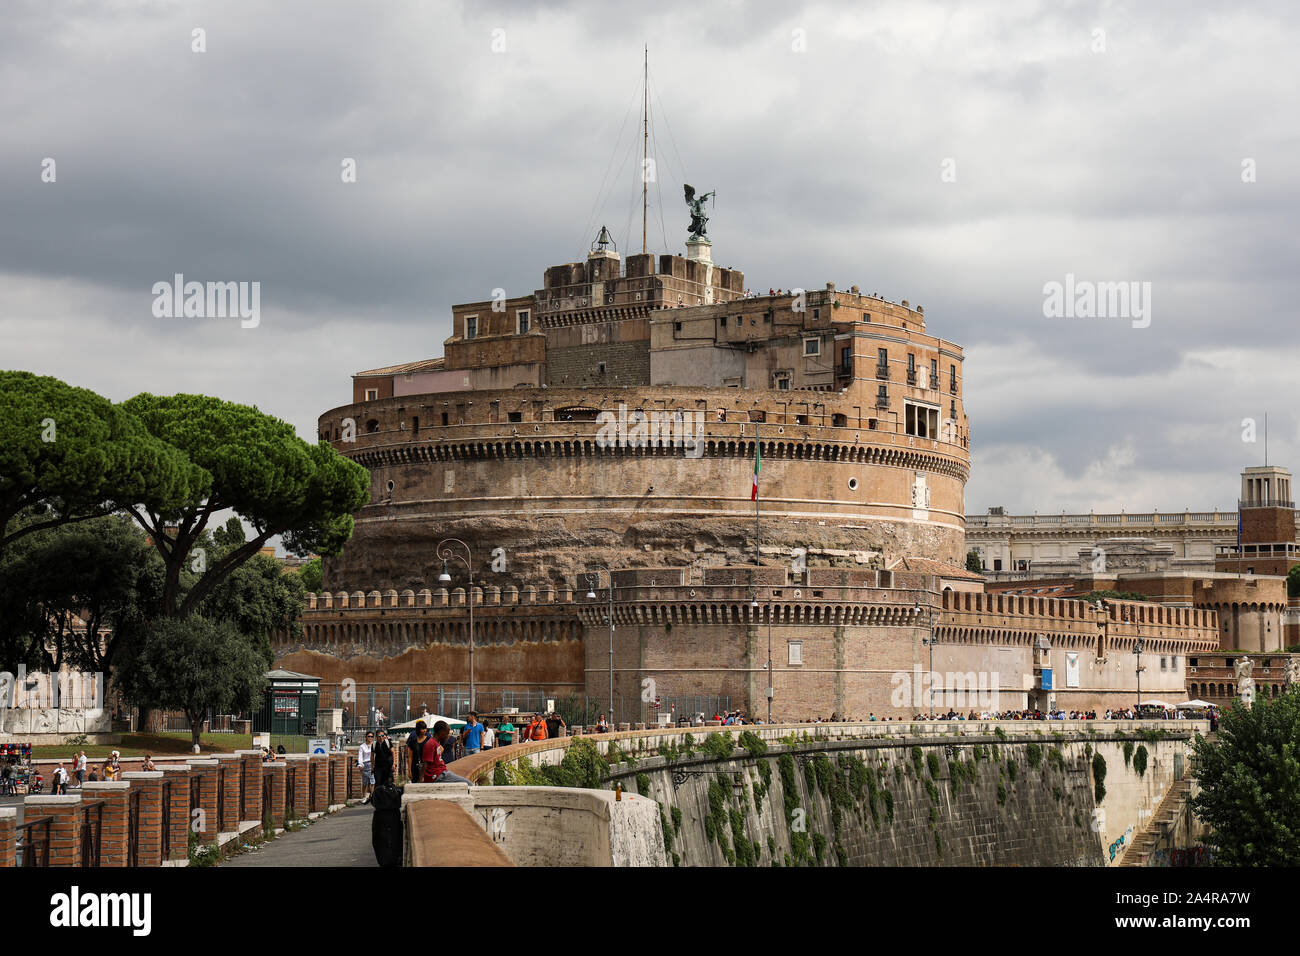 Das Mausoleum des Hadrian, In der Regel bekannt als Castel Sant'Angelo, am rechten Ufer des Tiber in Rom, Italien Stockfoto